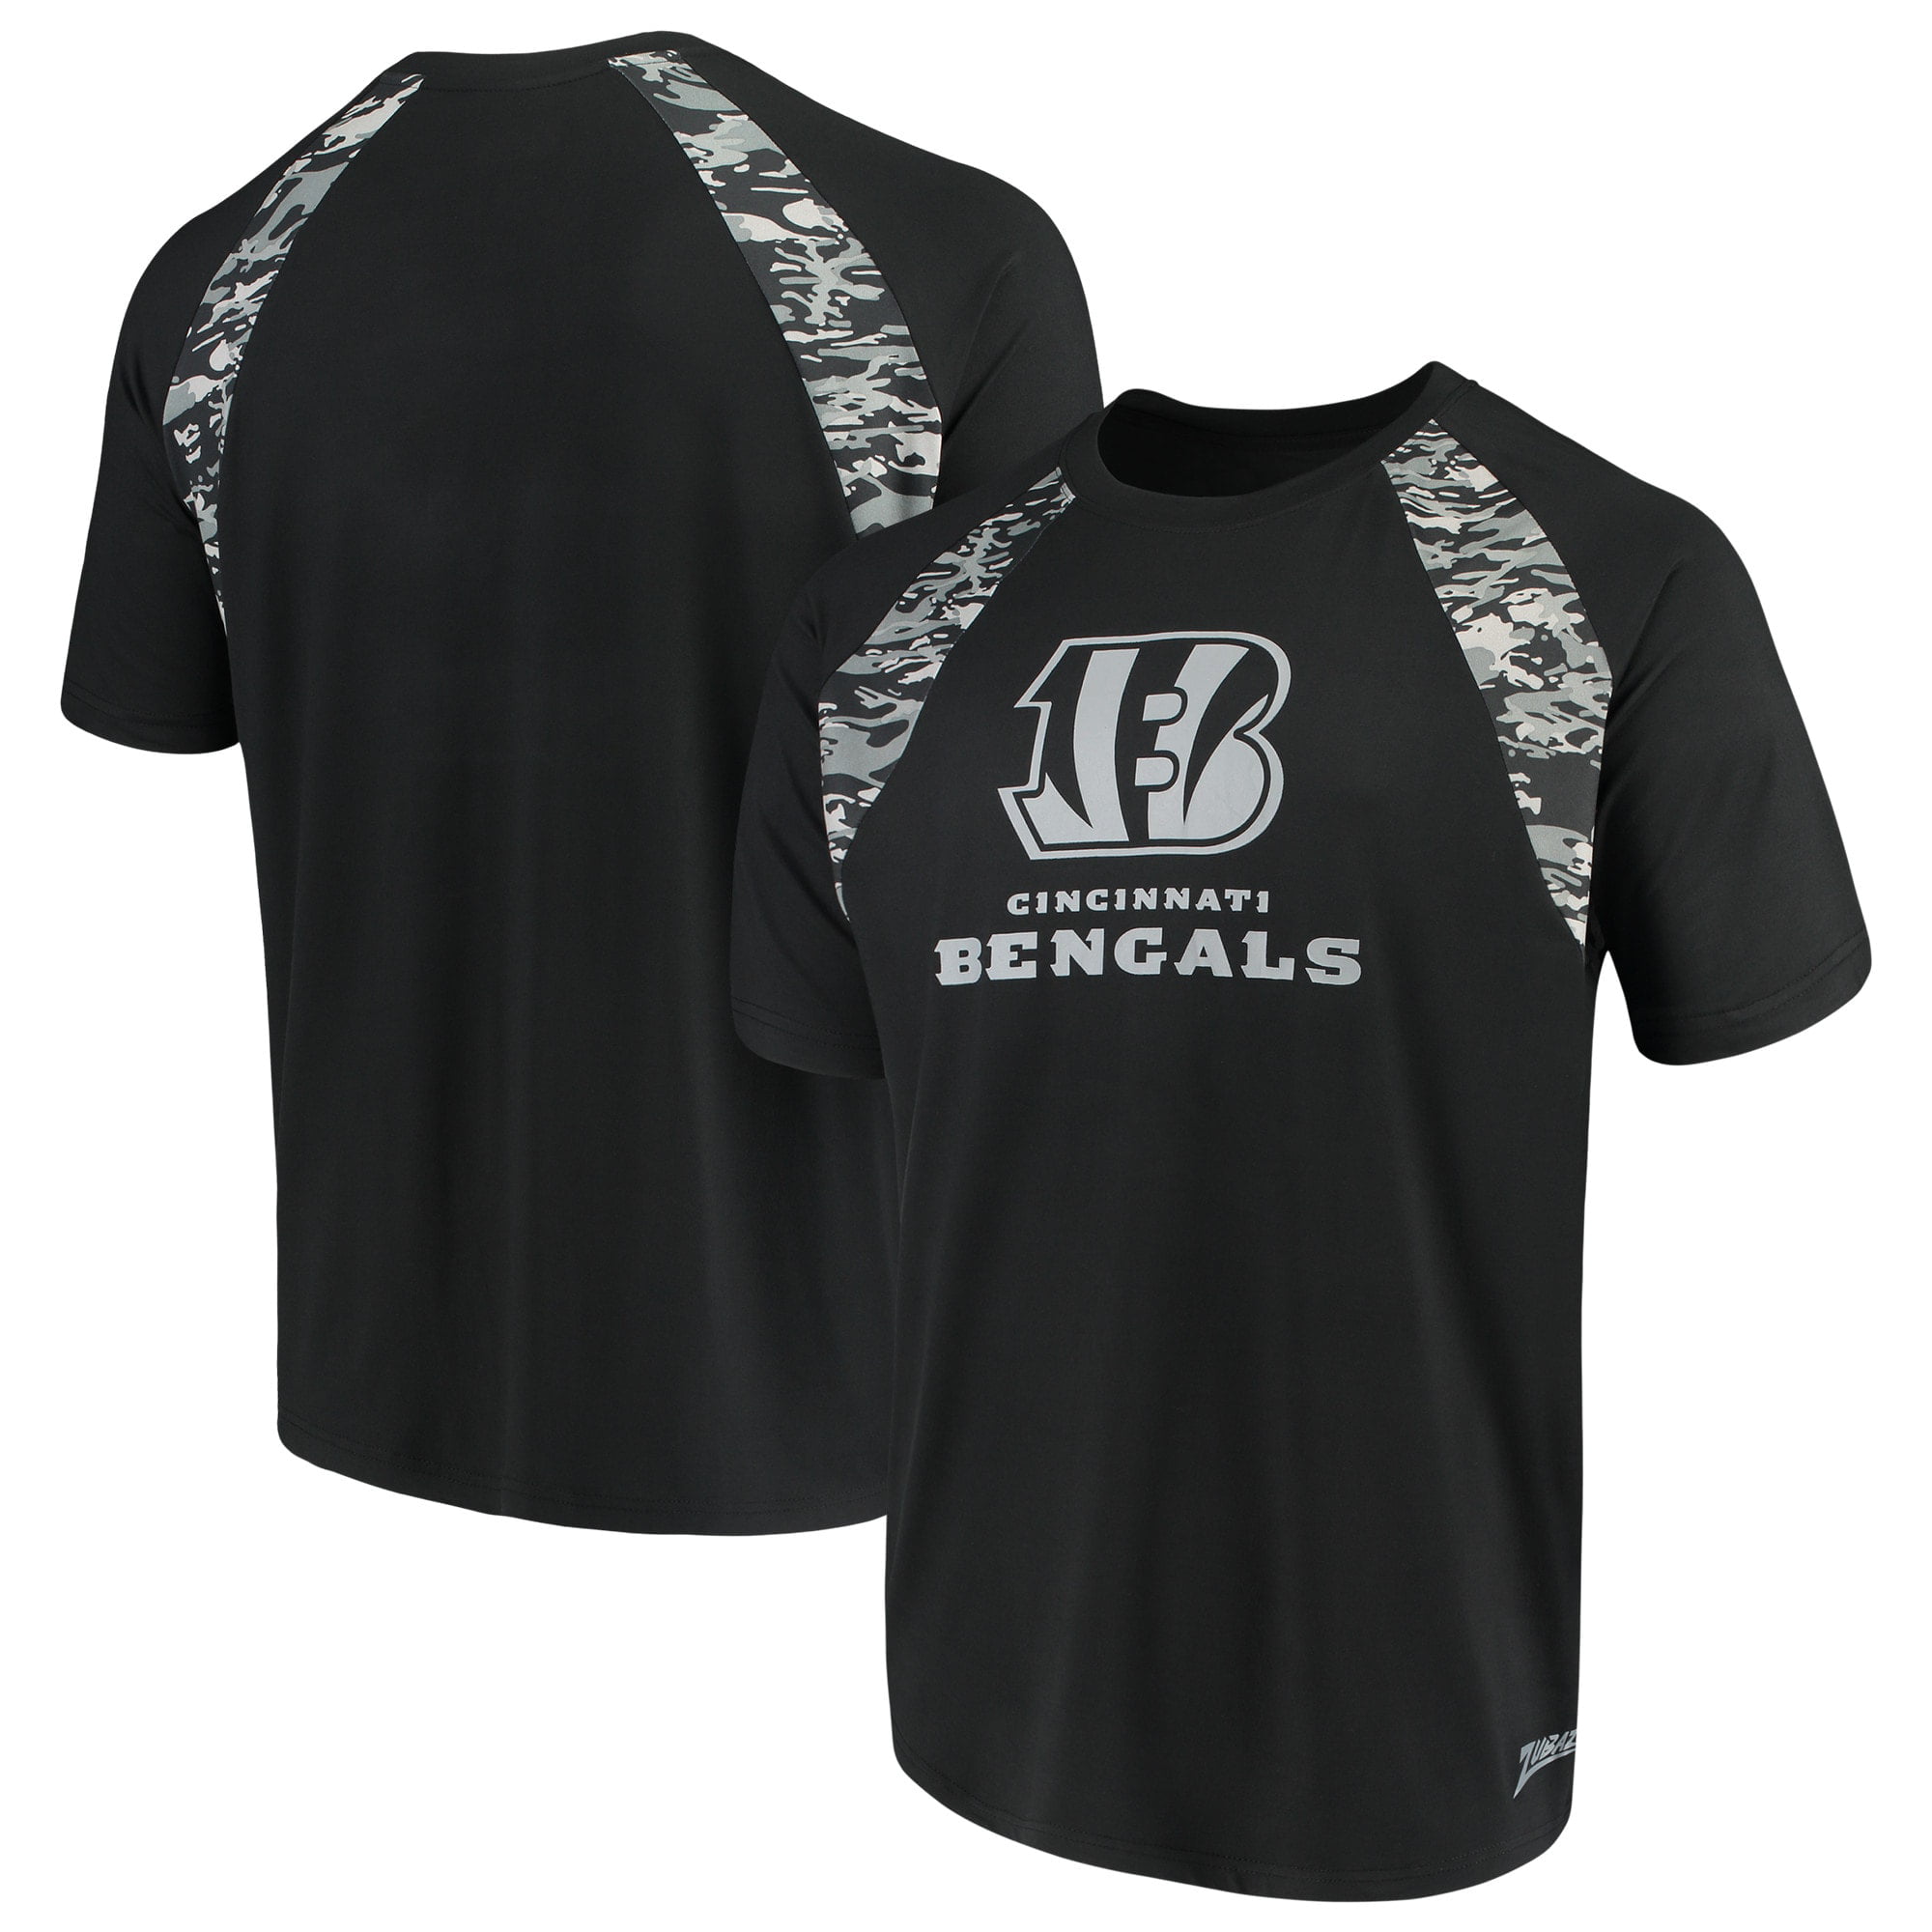 Men's Zubaz Black Cincinnati Bengals Camo Raglan T-Shirt - Walmart.com